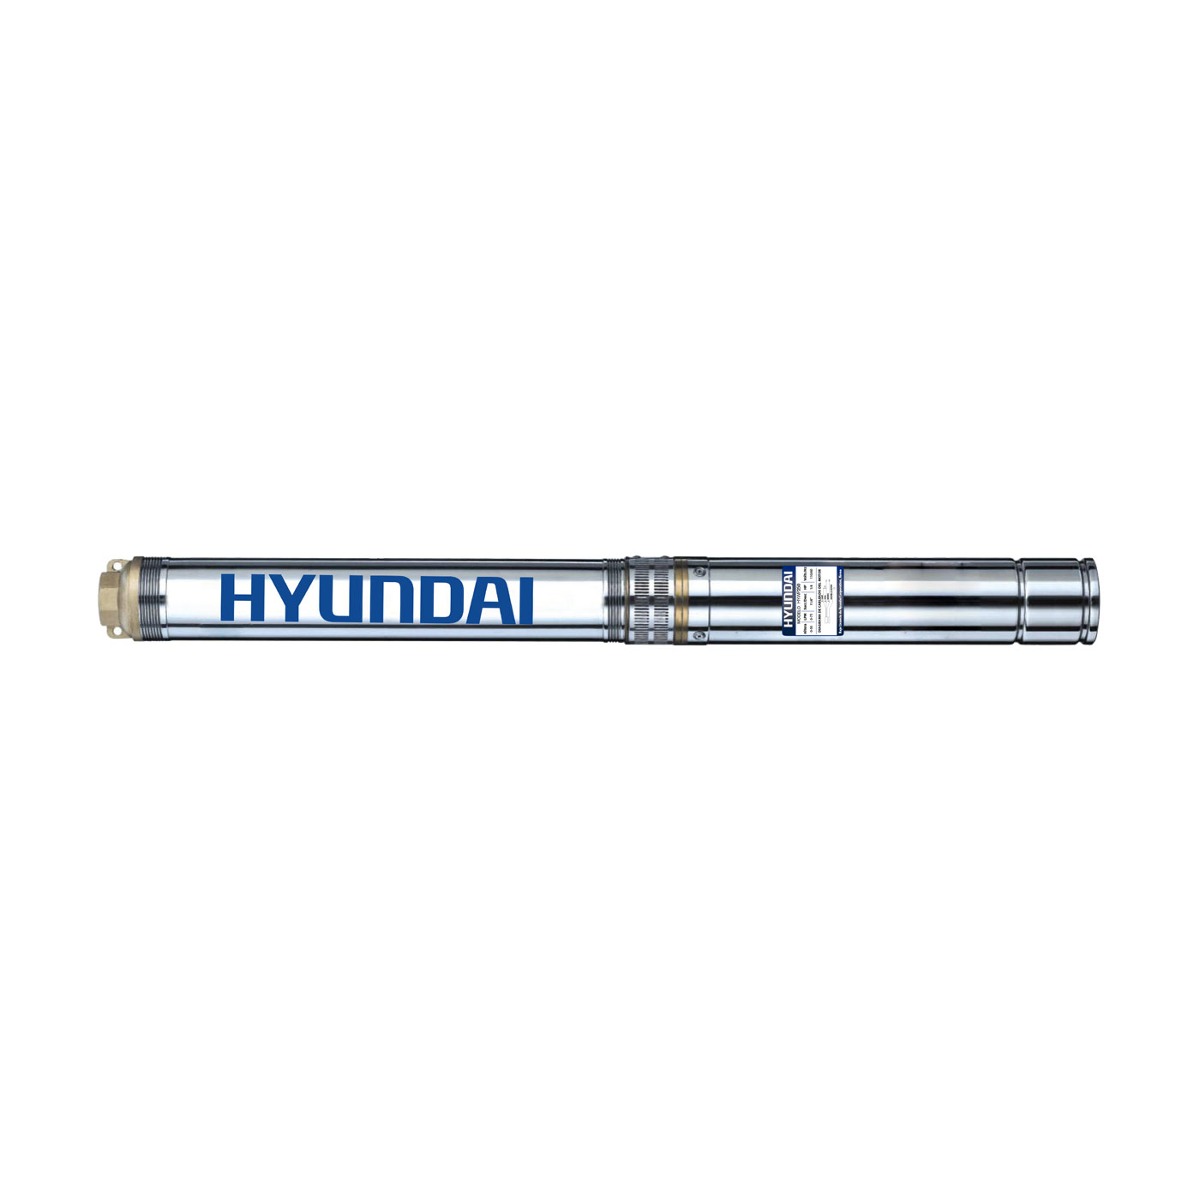 Bomba Sumergible Hyundai 14 Hp Eléctrica Pozo De 4 Hywp250 - DAKXIM - Mexico